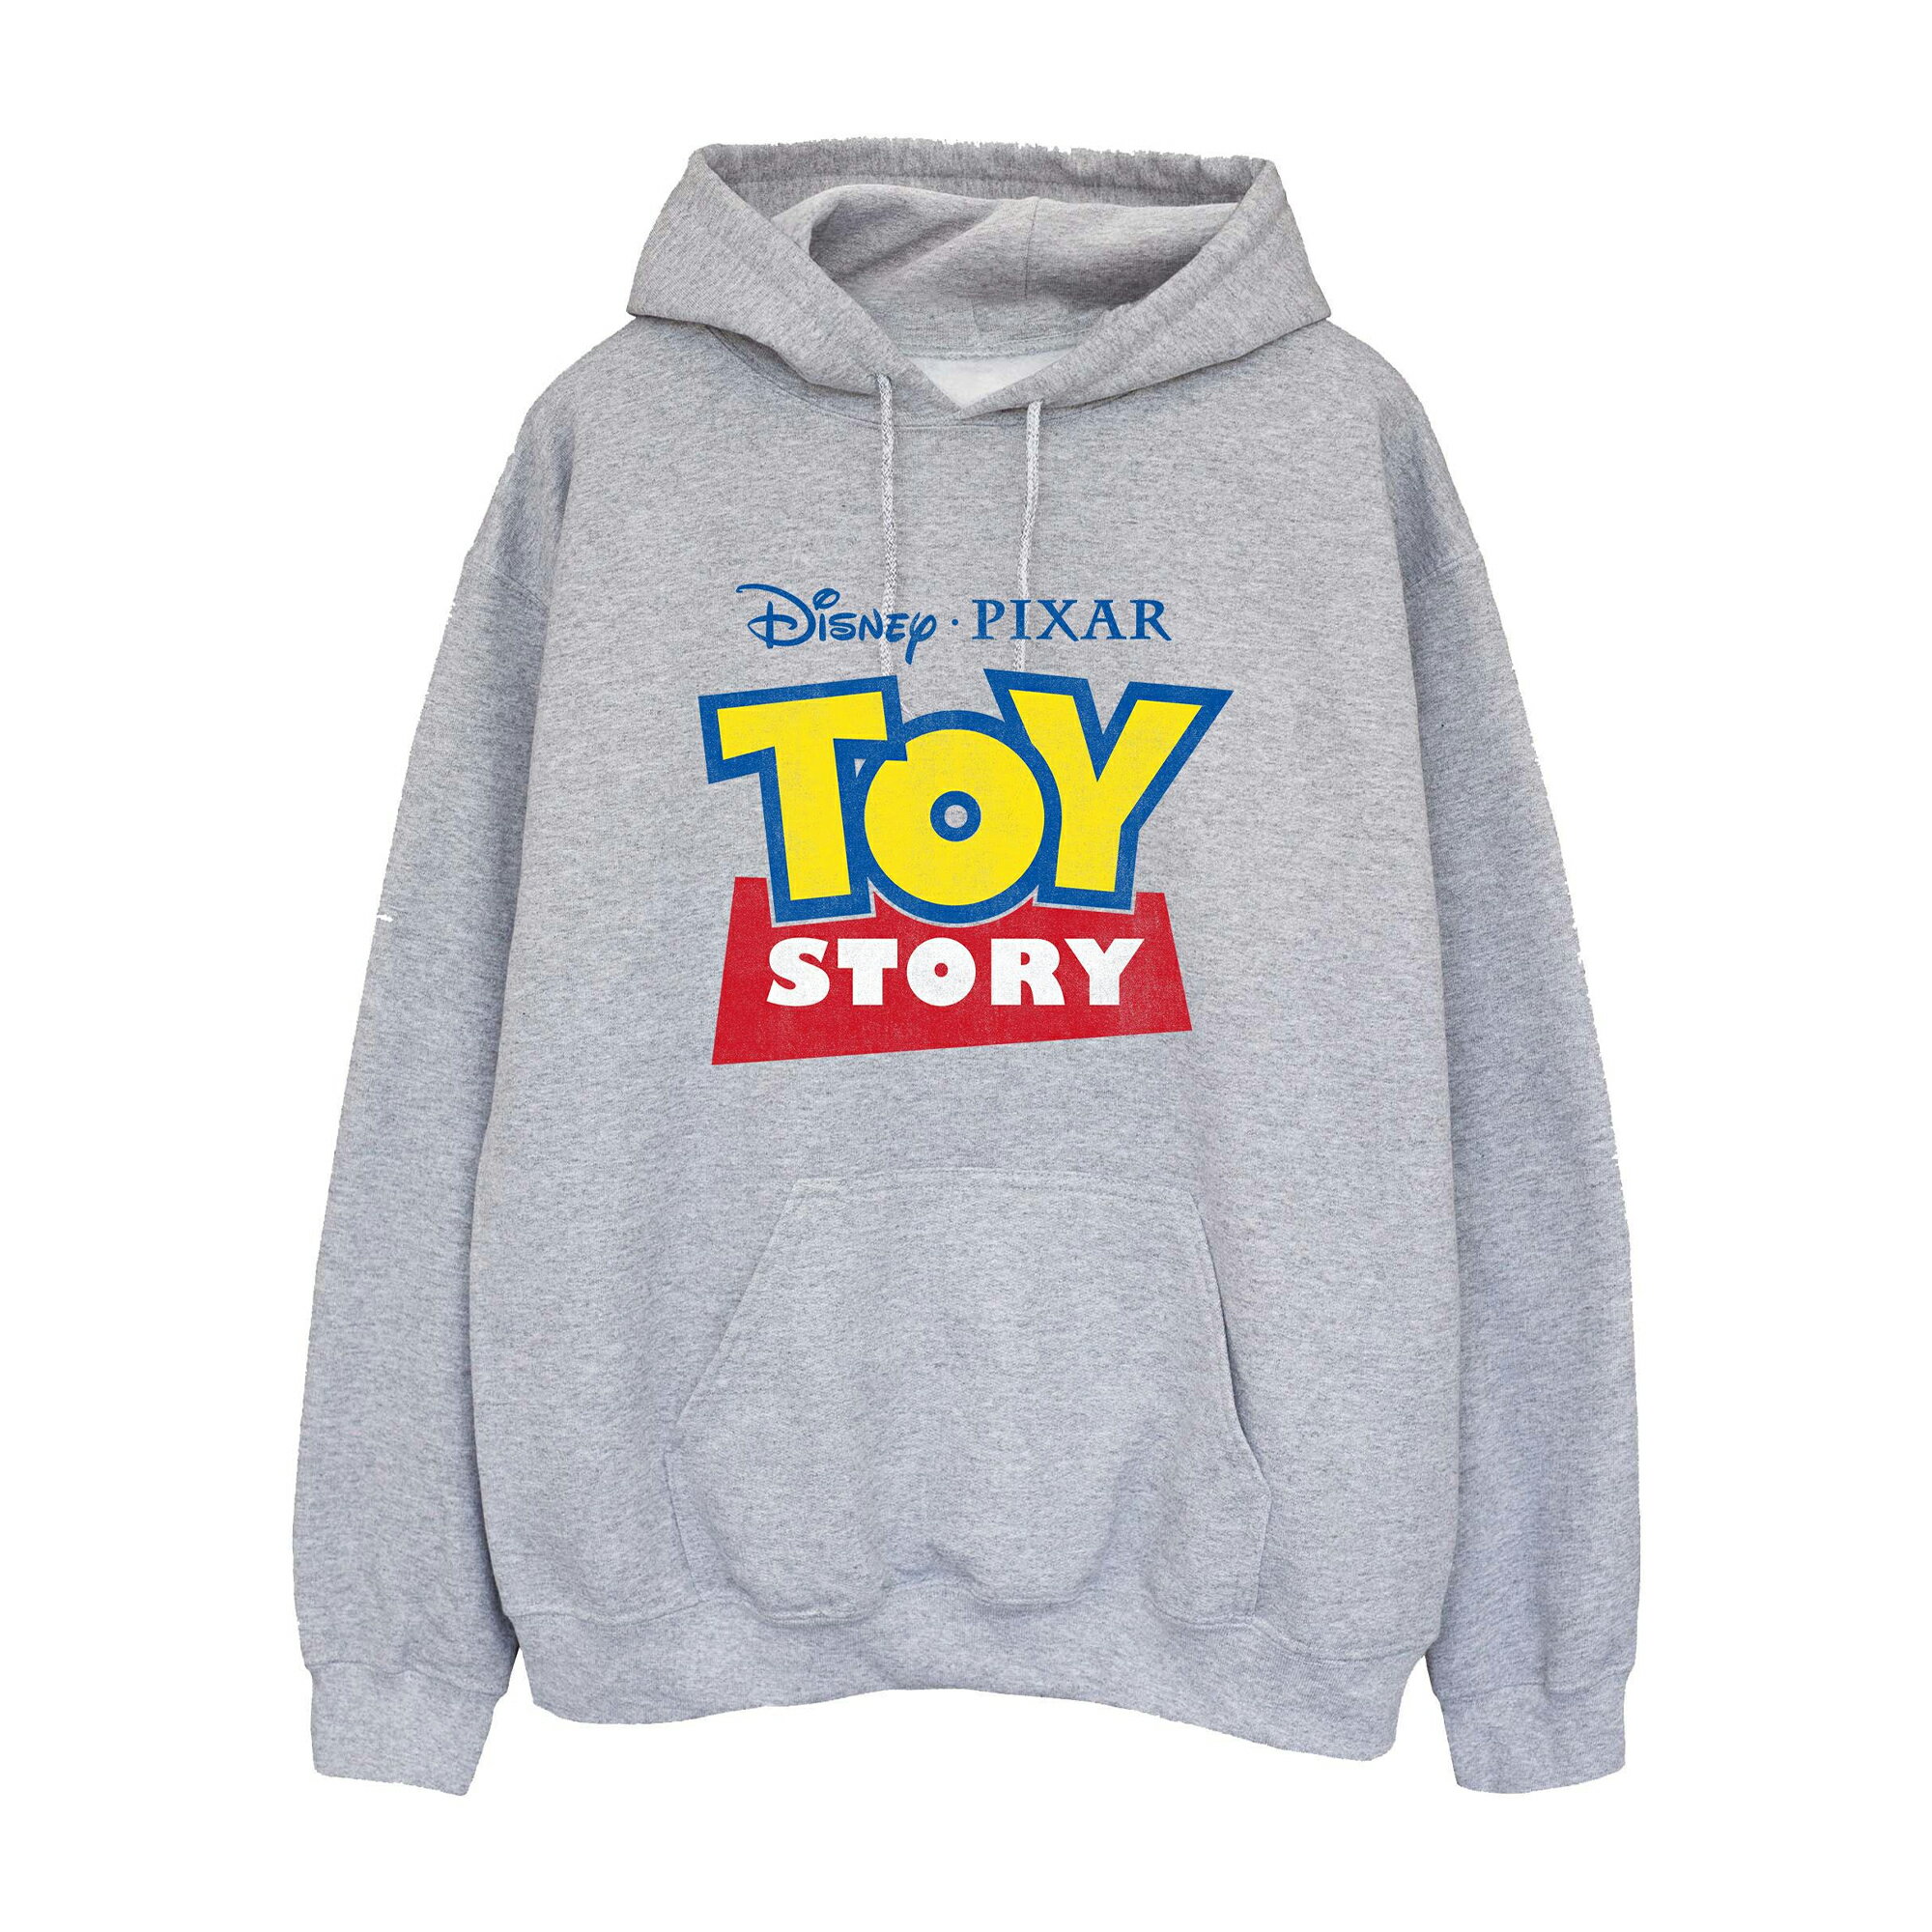 (トイ・ストーリー) Toy Story オフィシャル商品 レディース ロゴ パーカー ヘザー フード付き トレーナー 【海外通販】